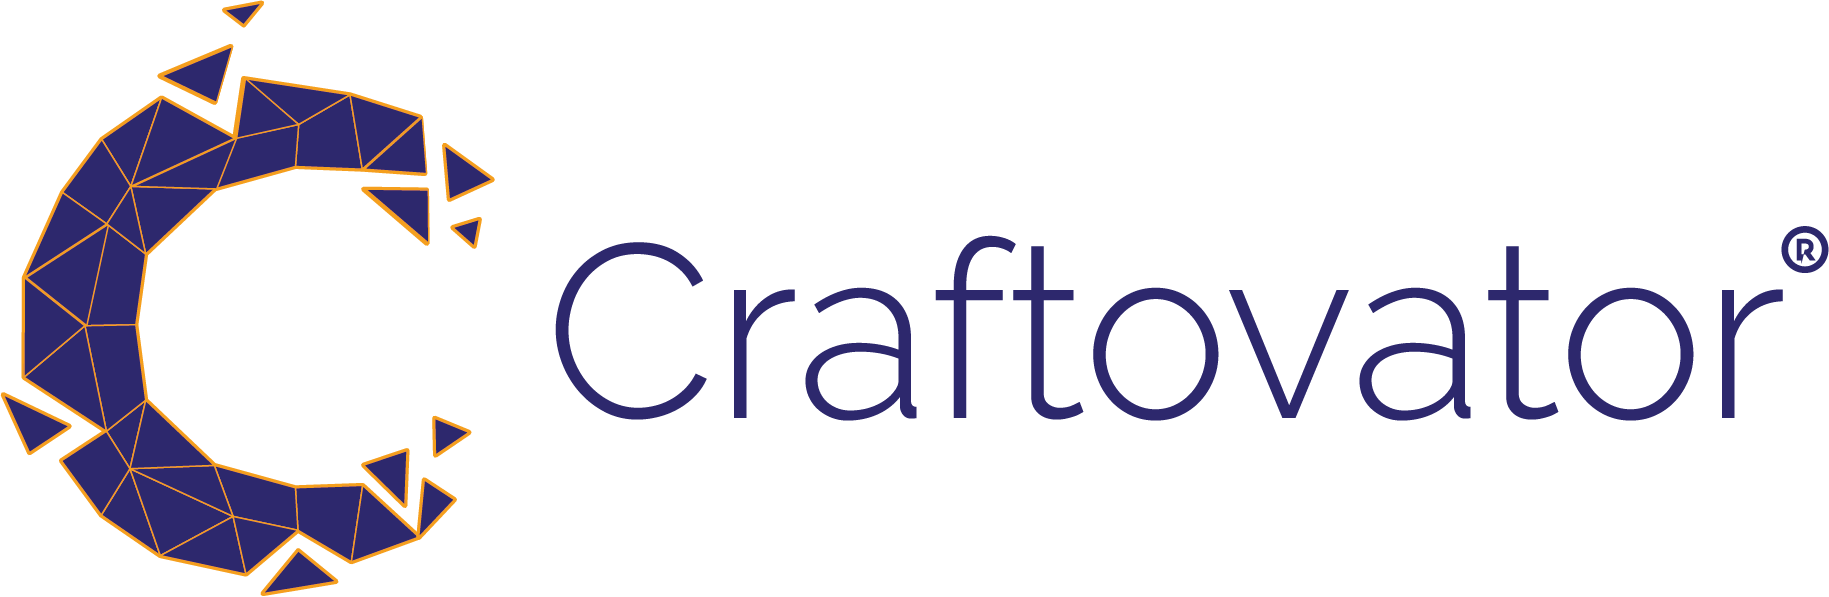 craftovator.co.uk